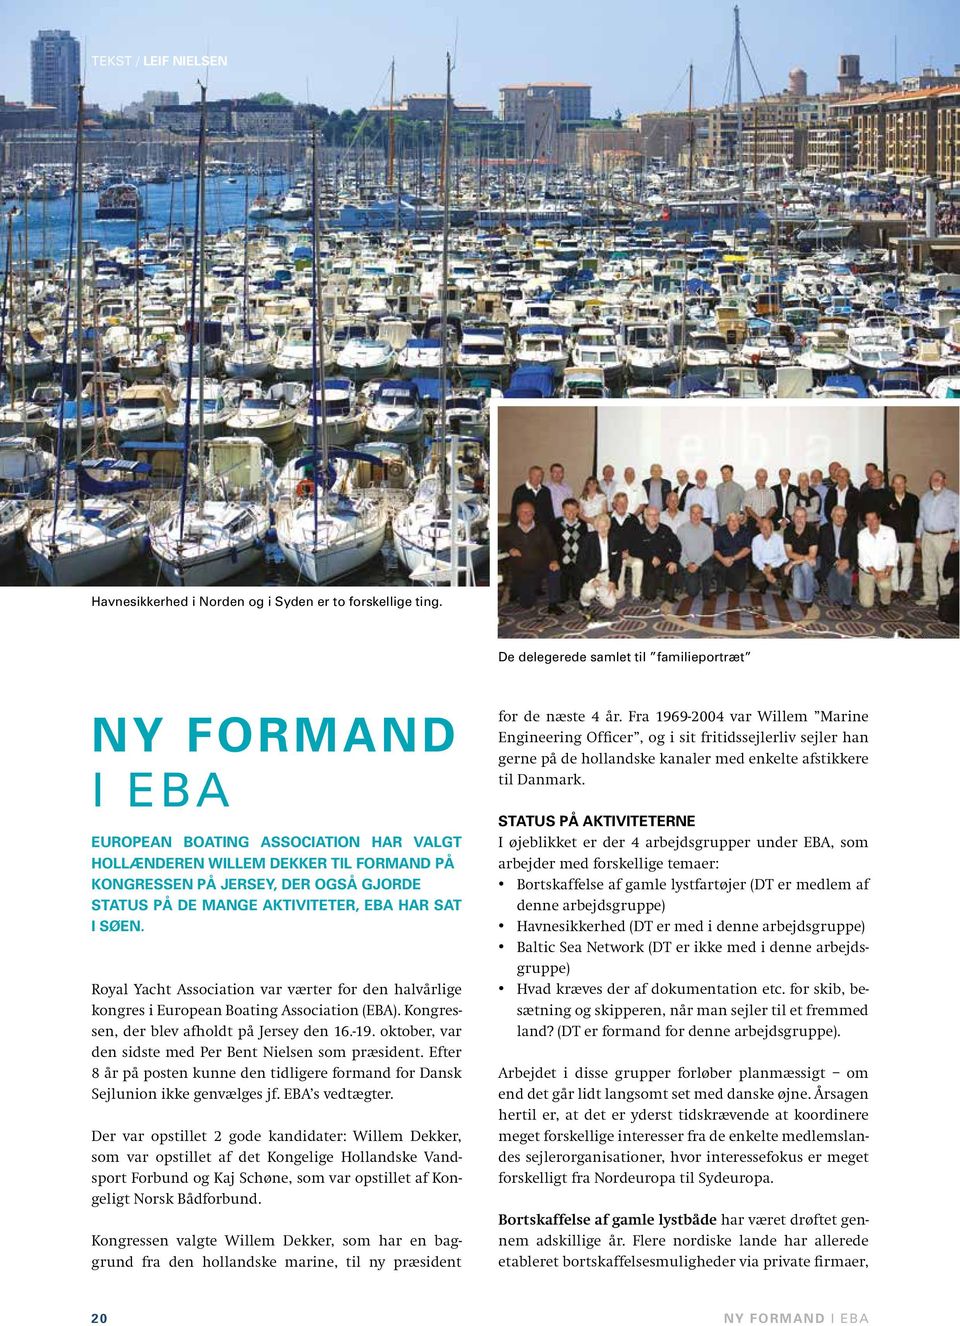 AKTIVITETER, EBA HAR SAT I SØEN. Royal Yacht Association var værter for den halvårlige kongres i European Boating Association (EBA). Kongressen, der blev afholdt på Jersey den 16.-19.